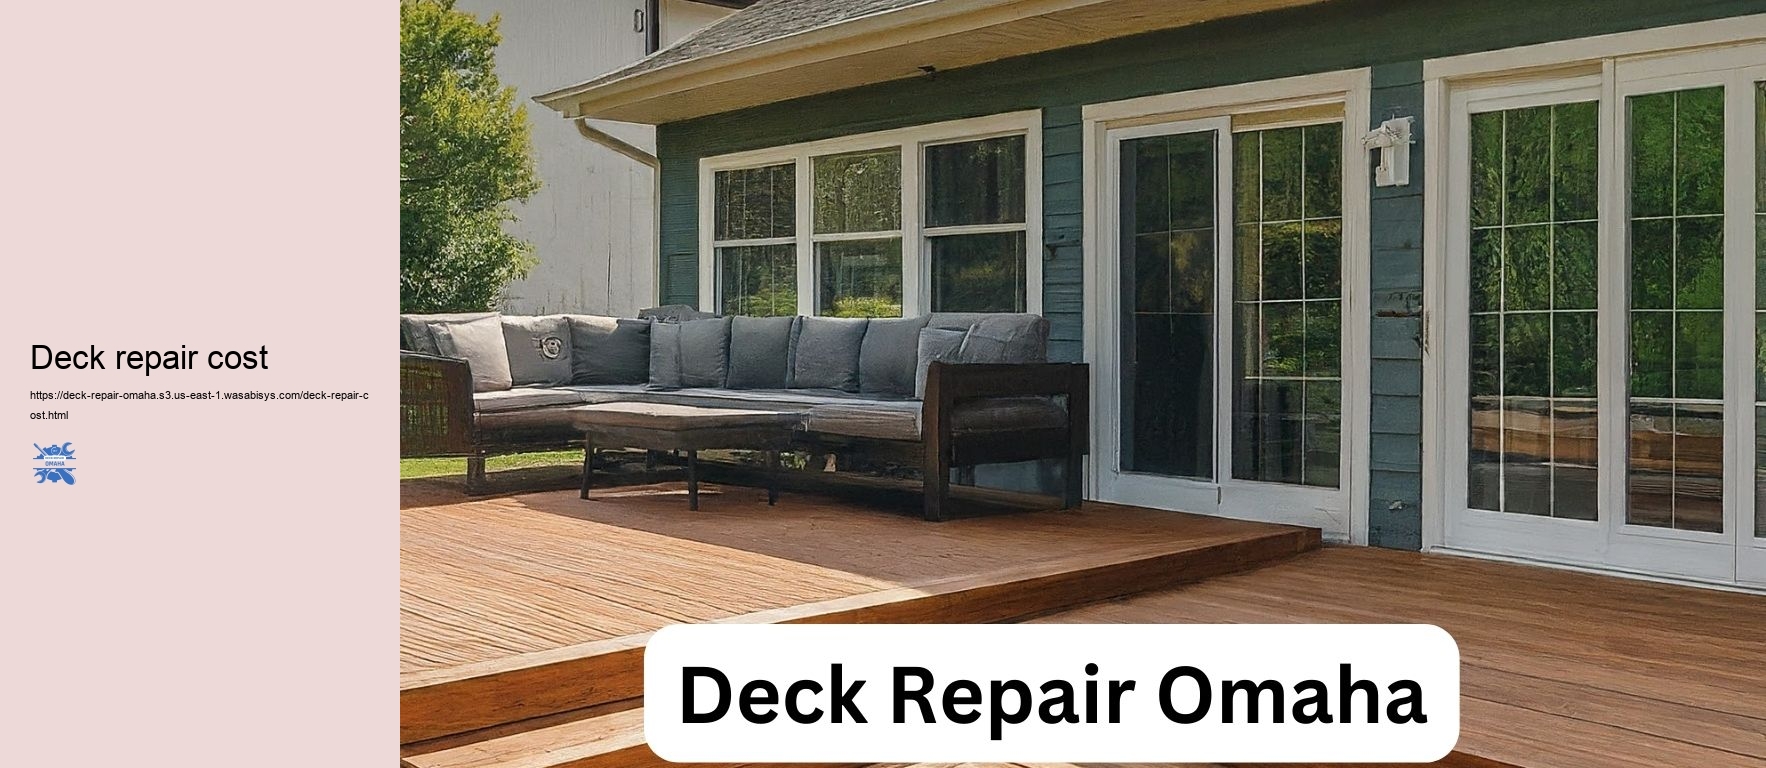 Deck repair cost